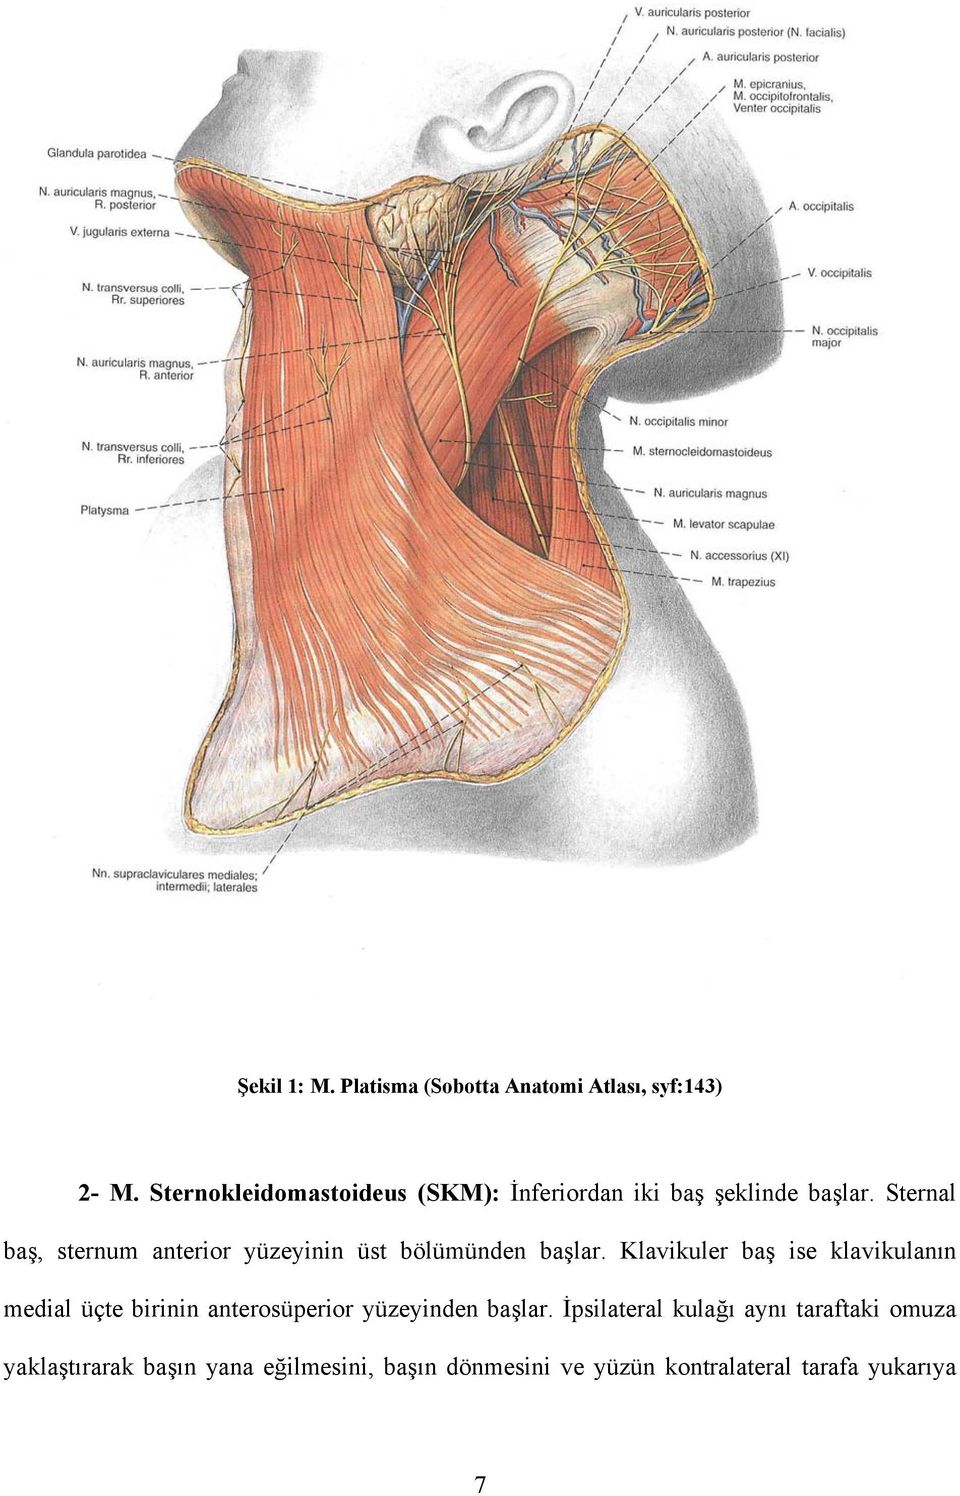 Sternal baş, sternum anterior yüzeyinin üst bölümünden başlar.